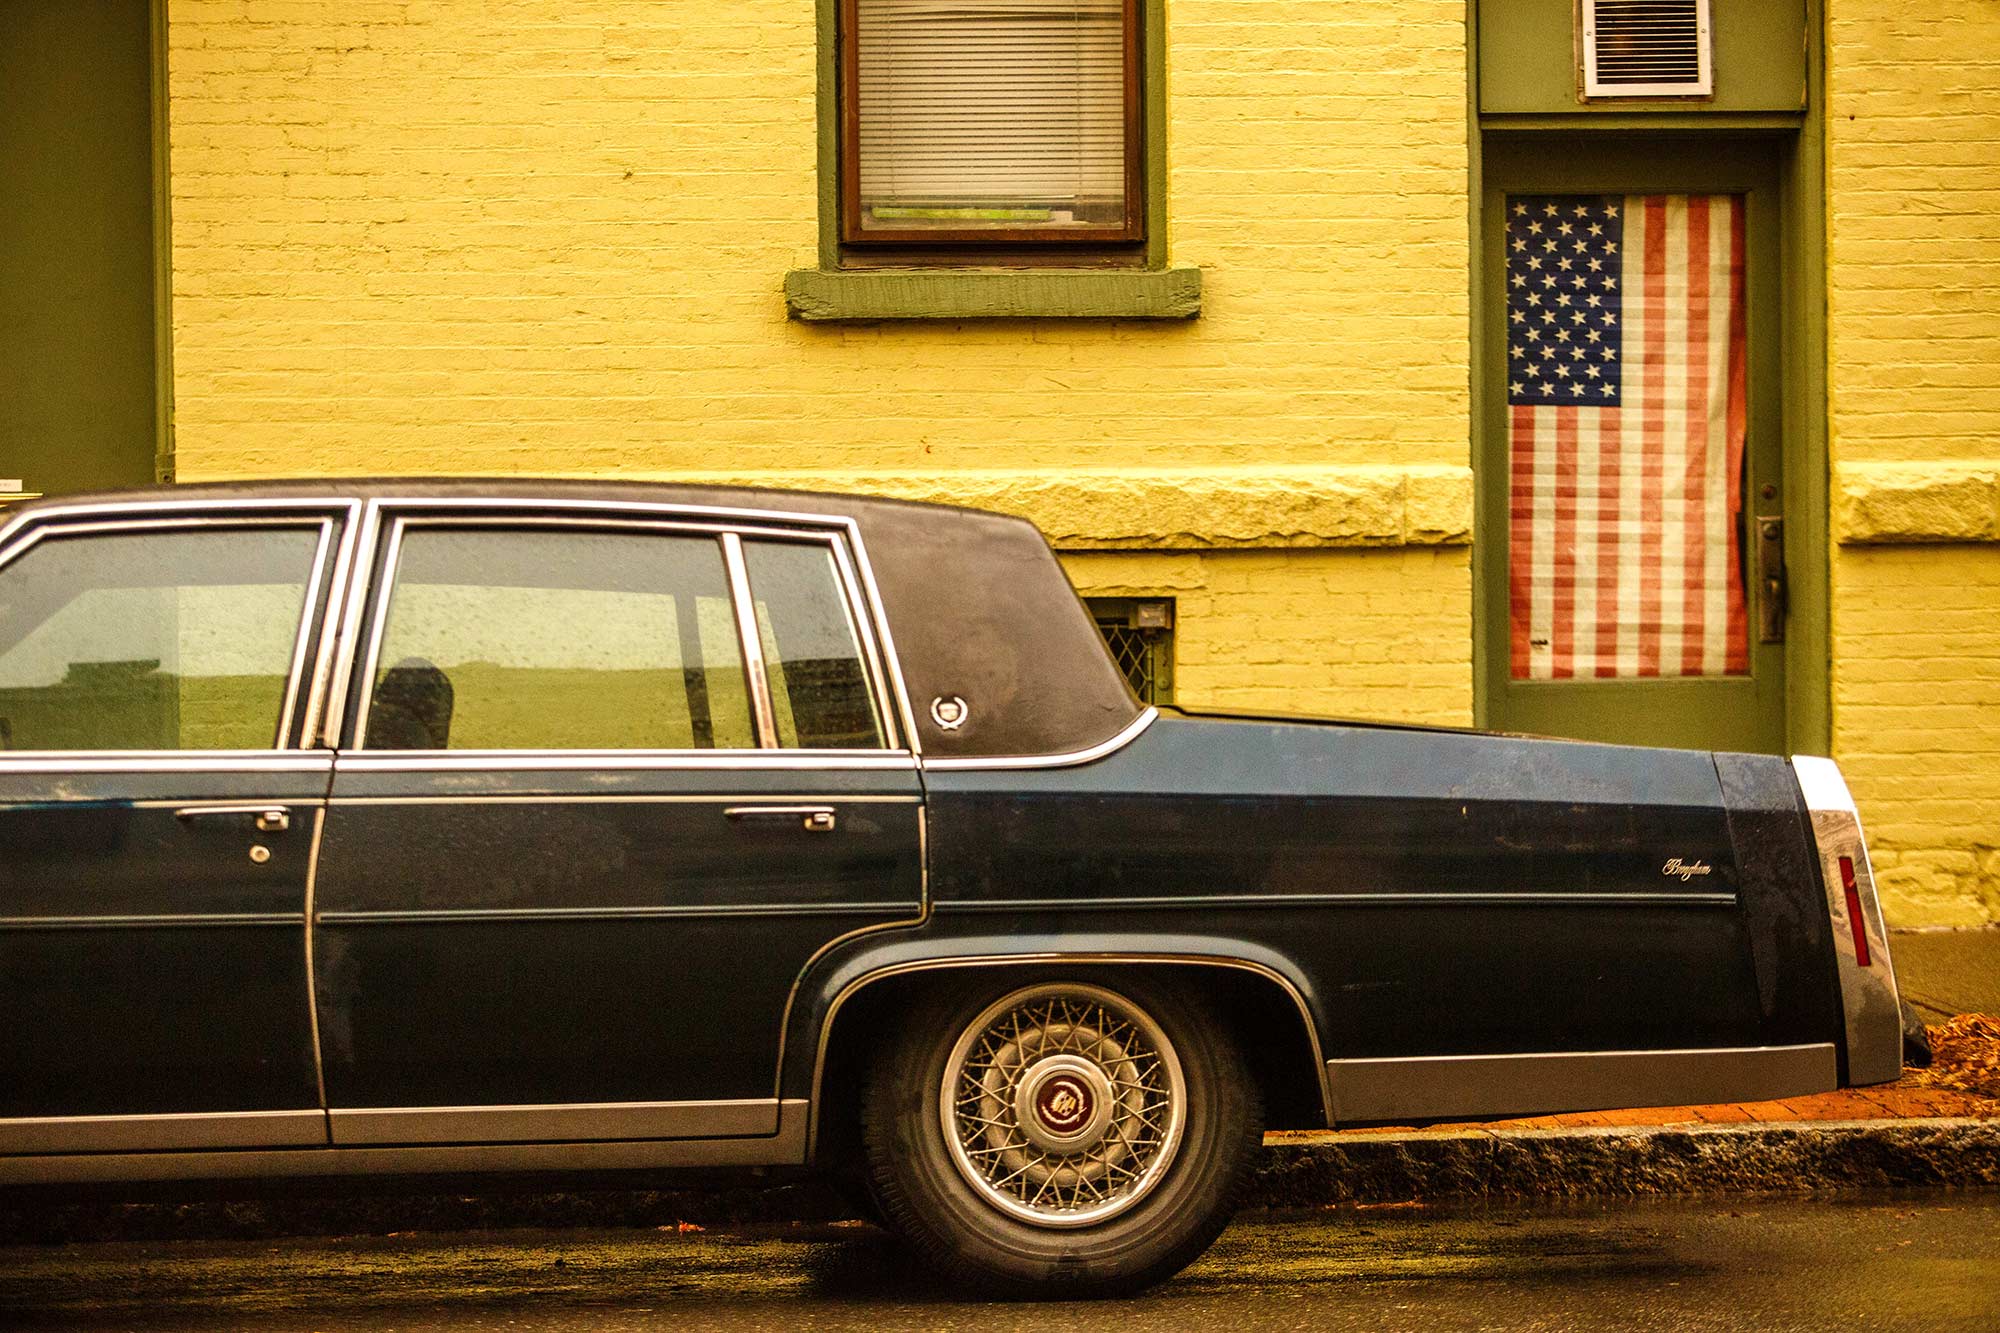 Vintage Cadillac, Troy, NY - 12/22